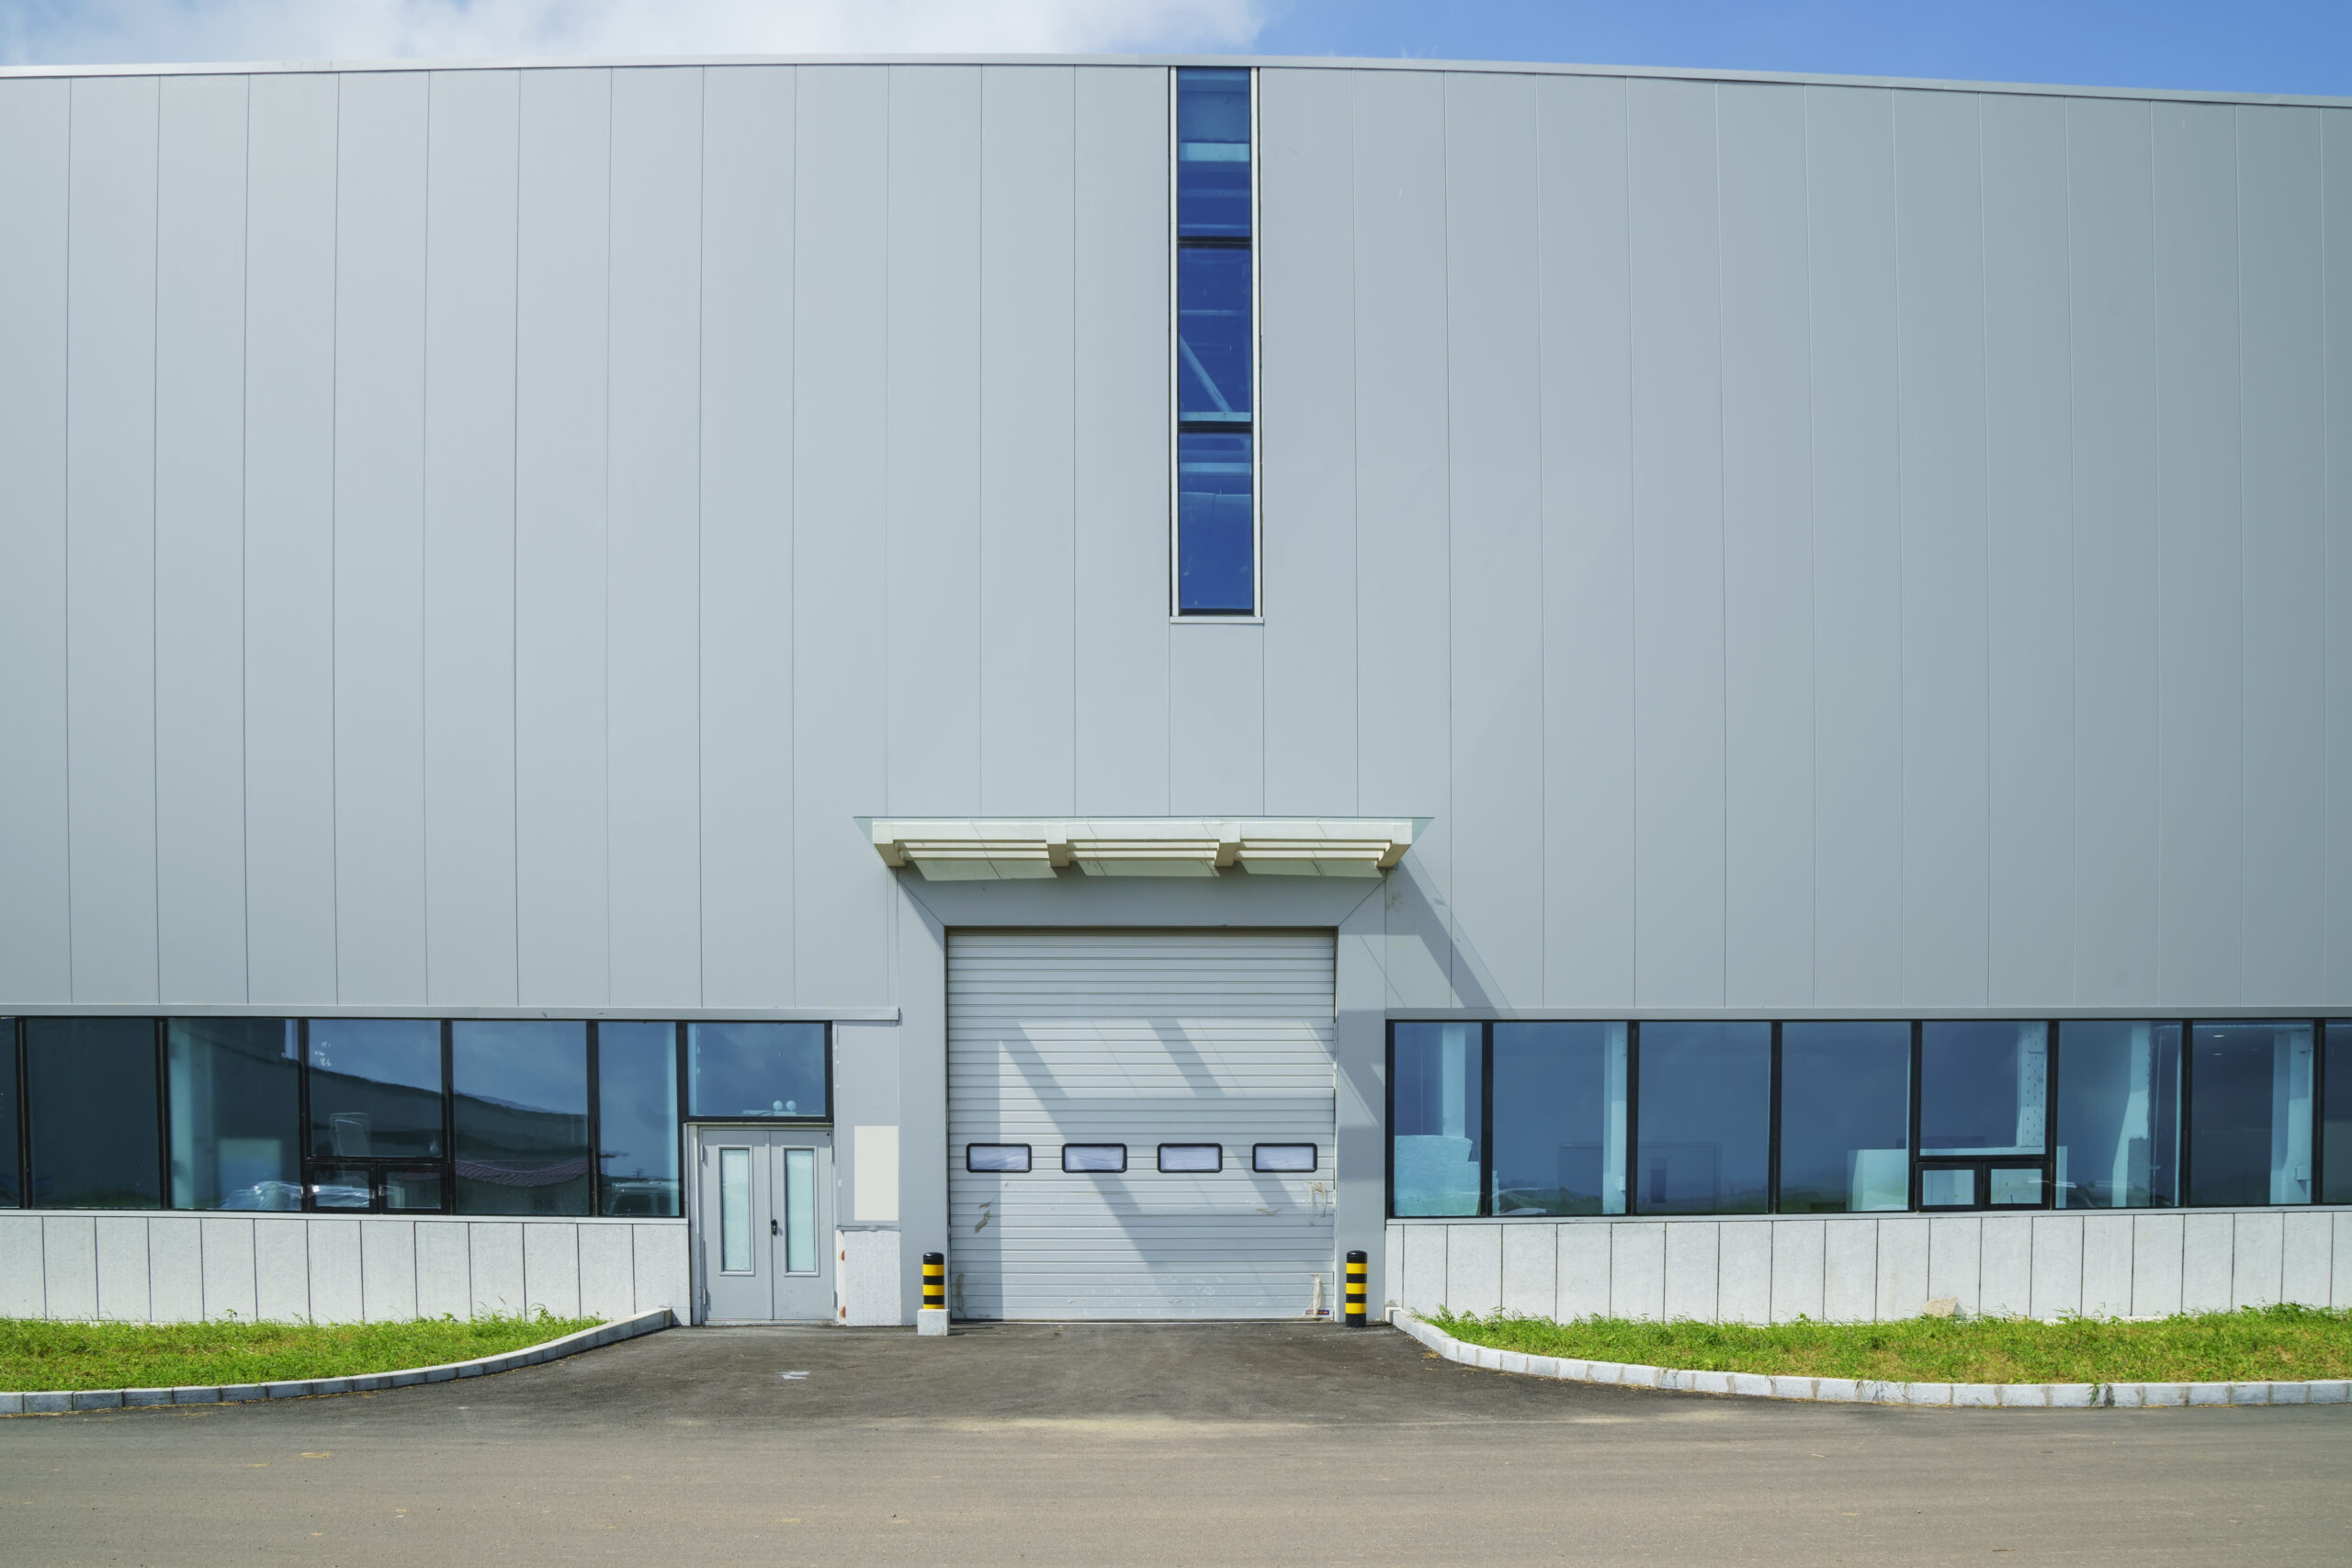 industrial garage door at industrial-park-factory-building-warehouse